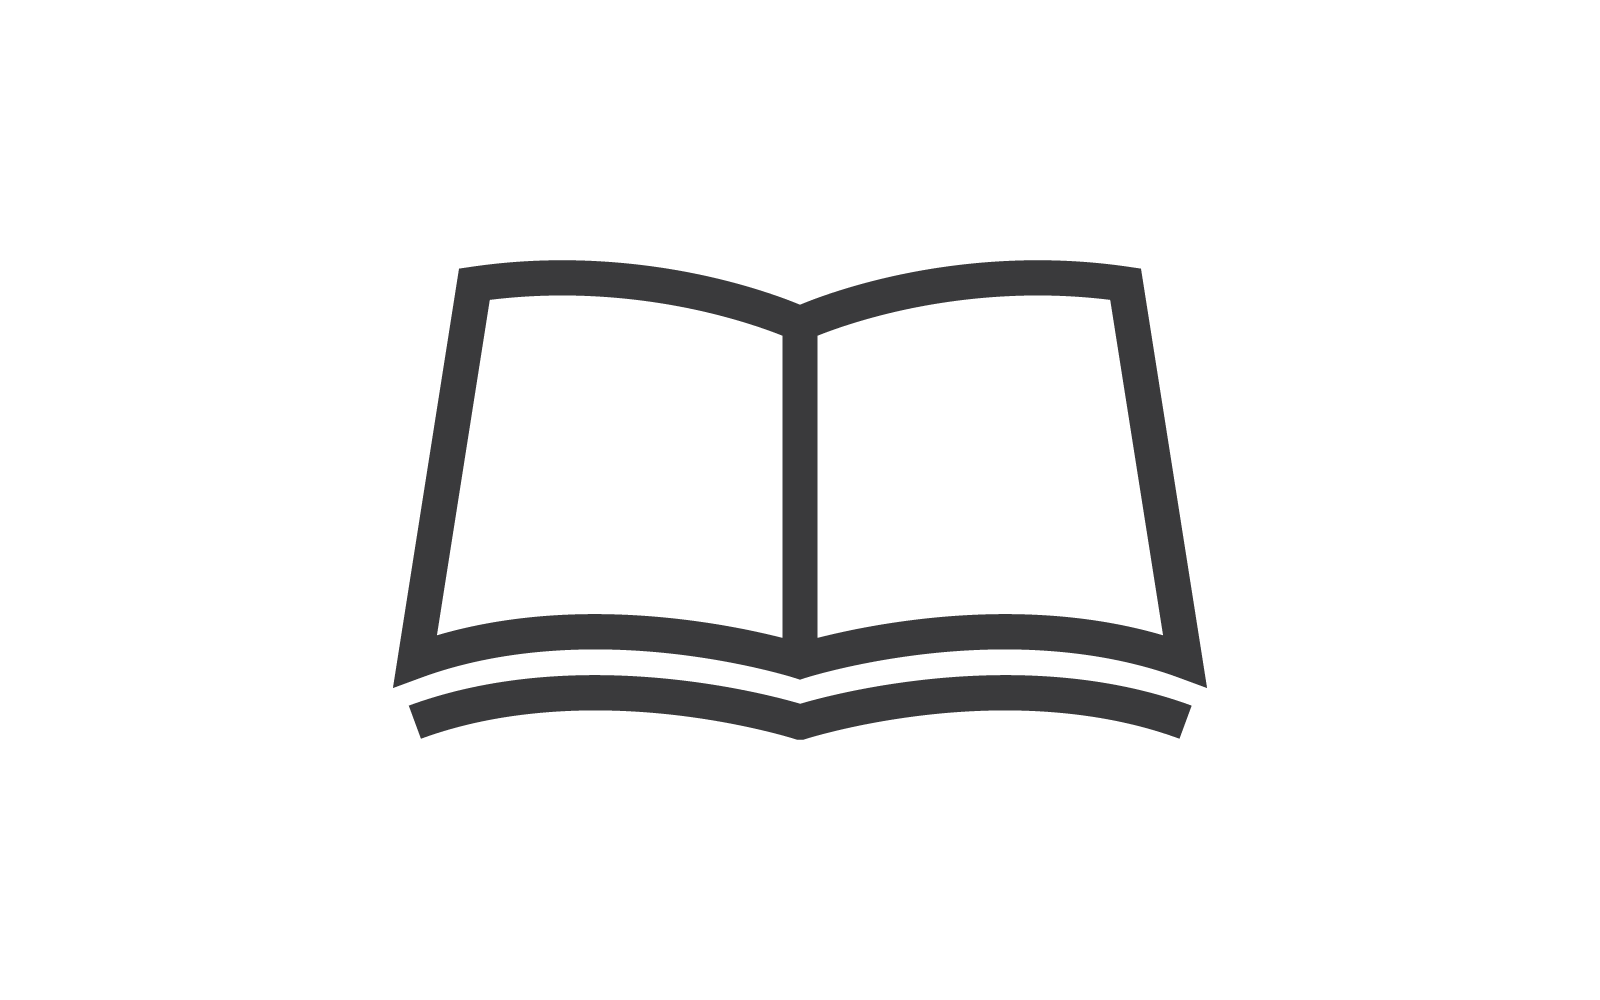 Book education logo icon vector flat design